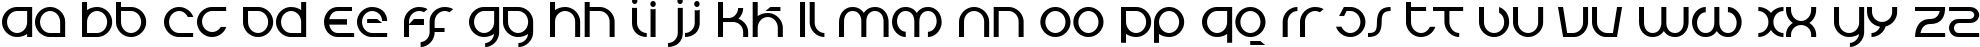 Пример написания английского алфавита шрифтом Tierra Blanca